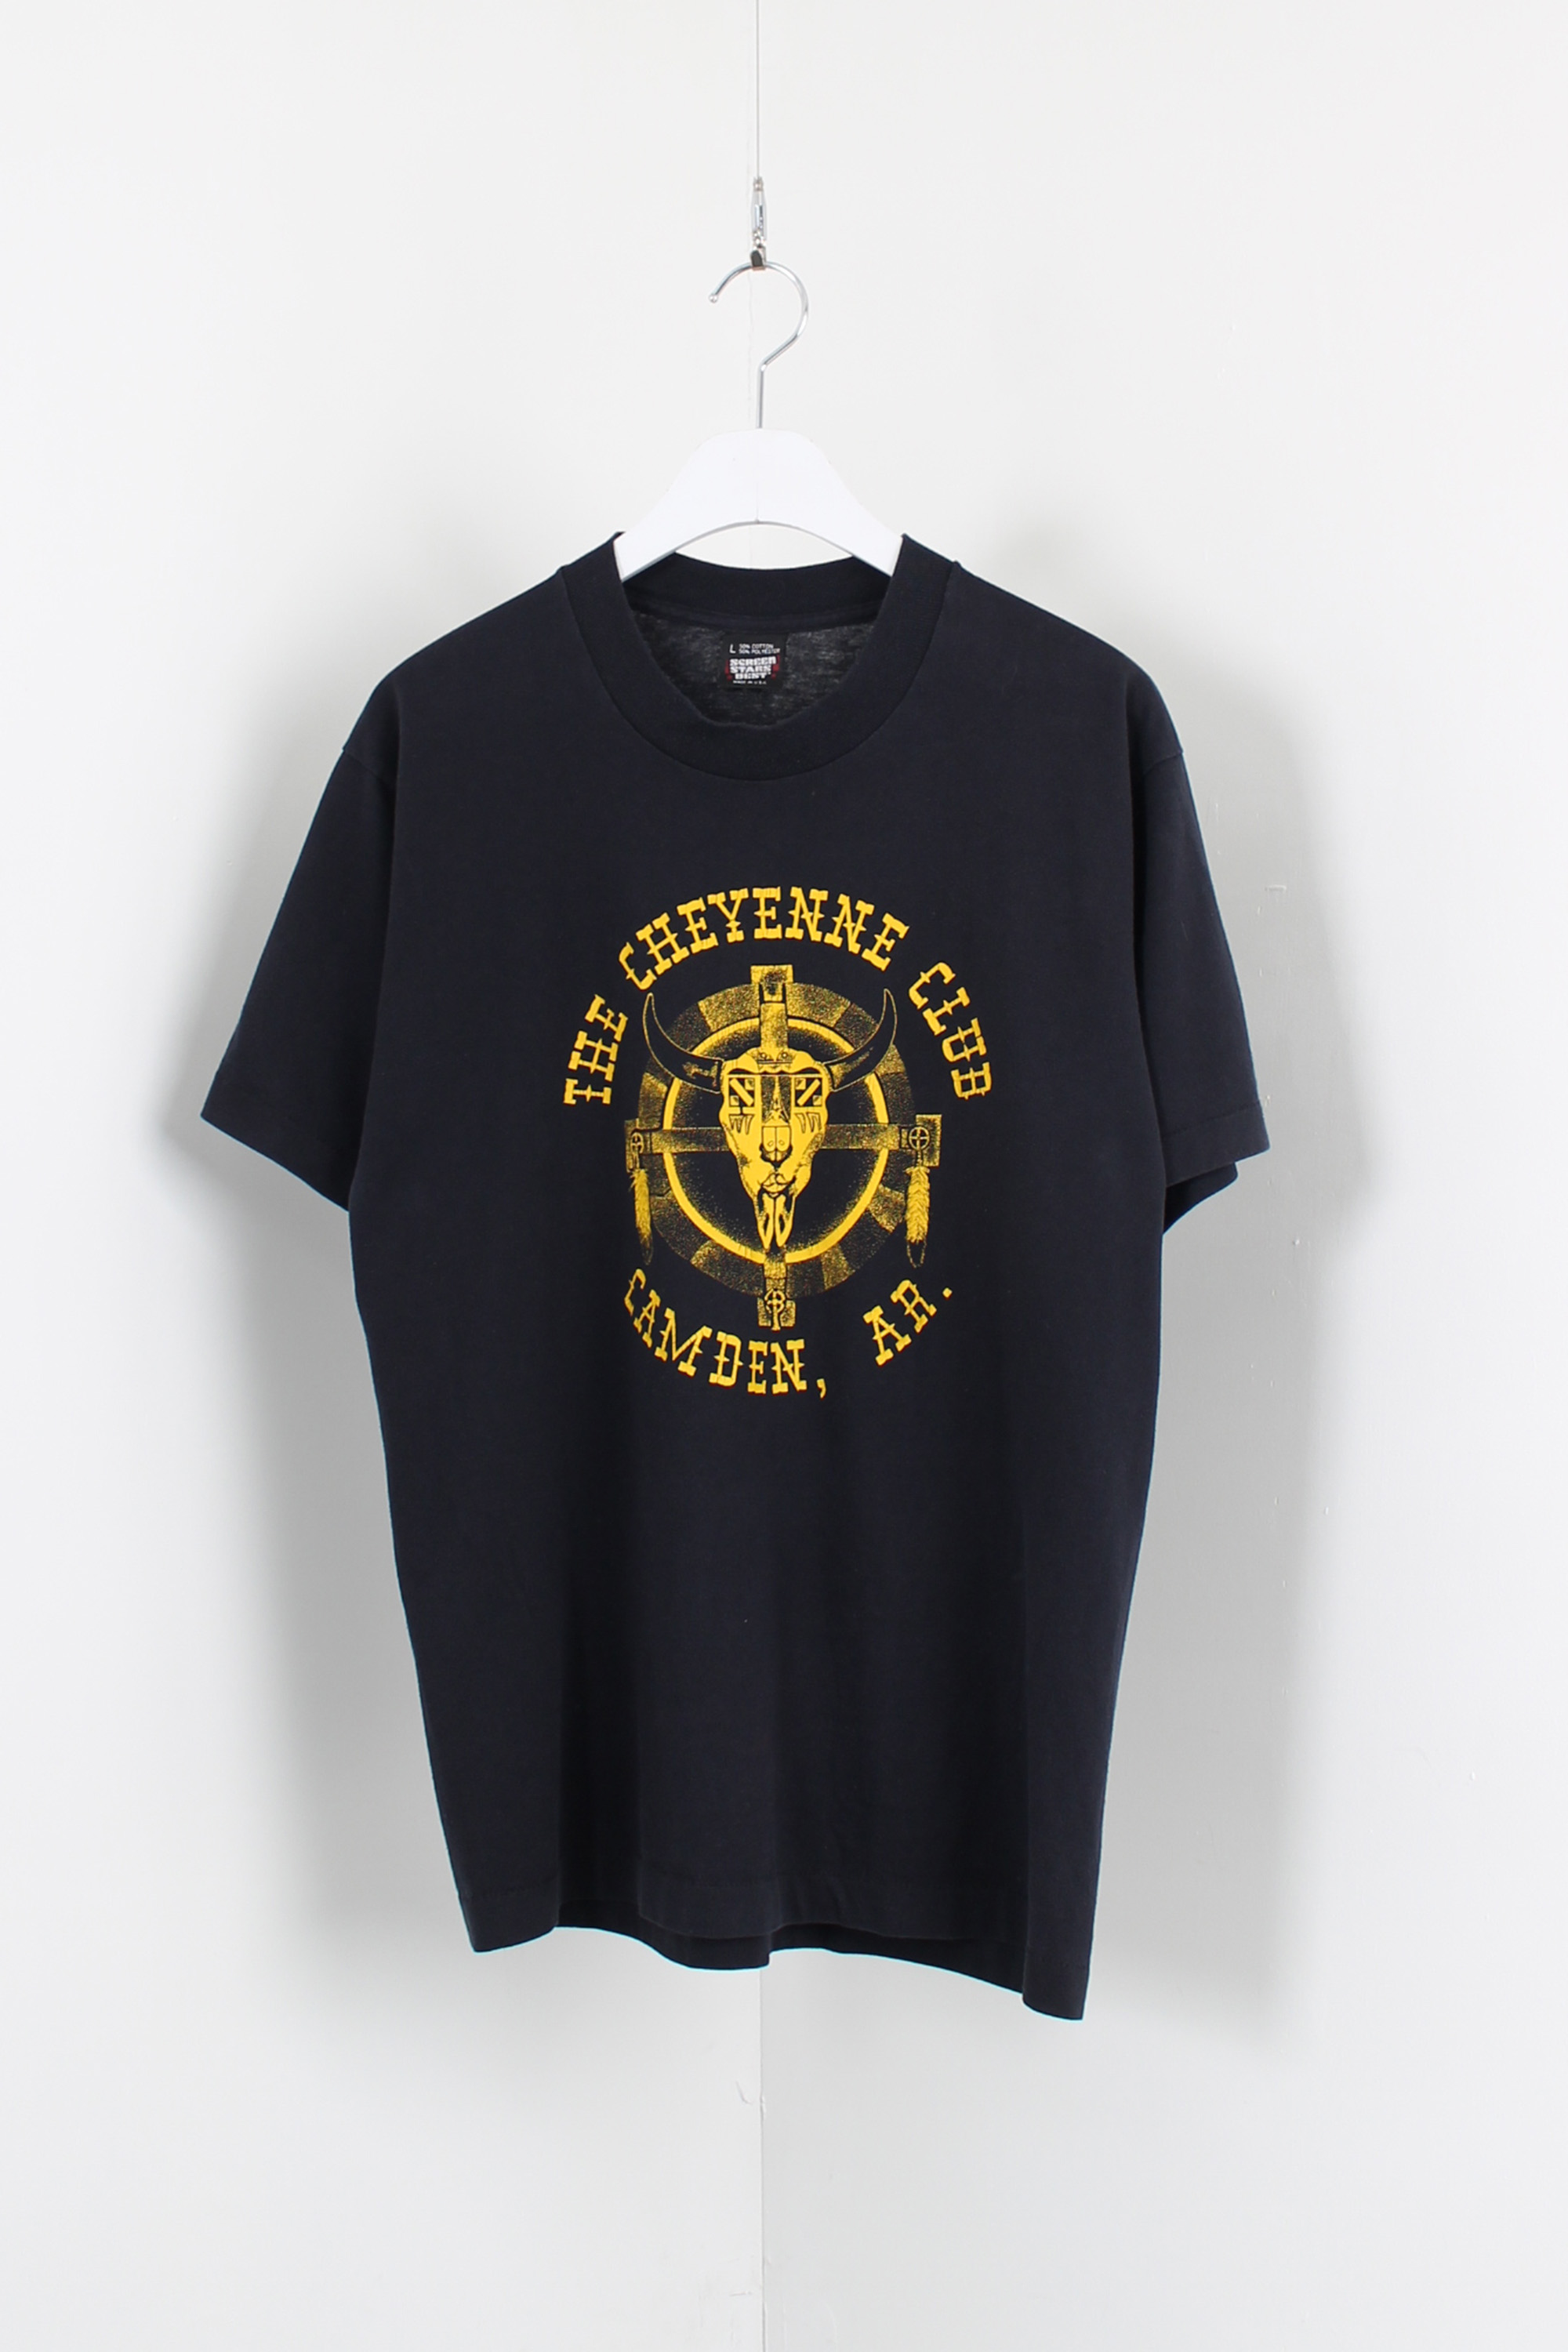 90s SCREEN STAR 50/50 t-shirt